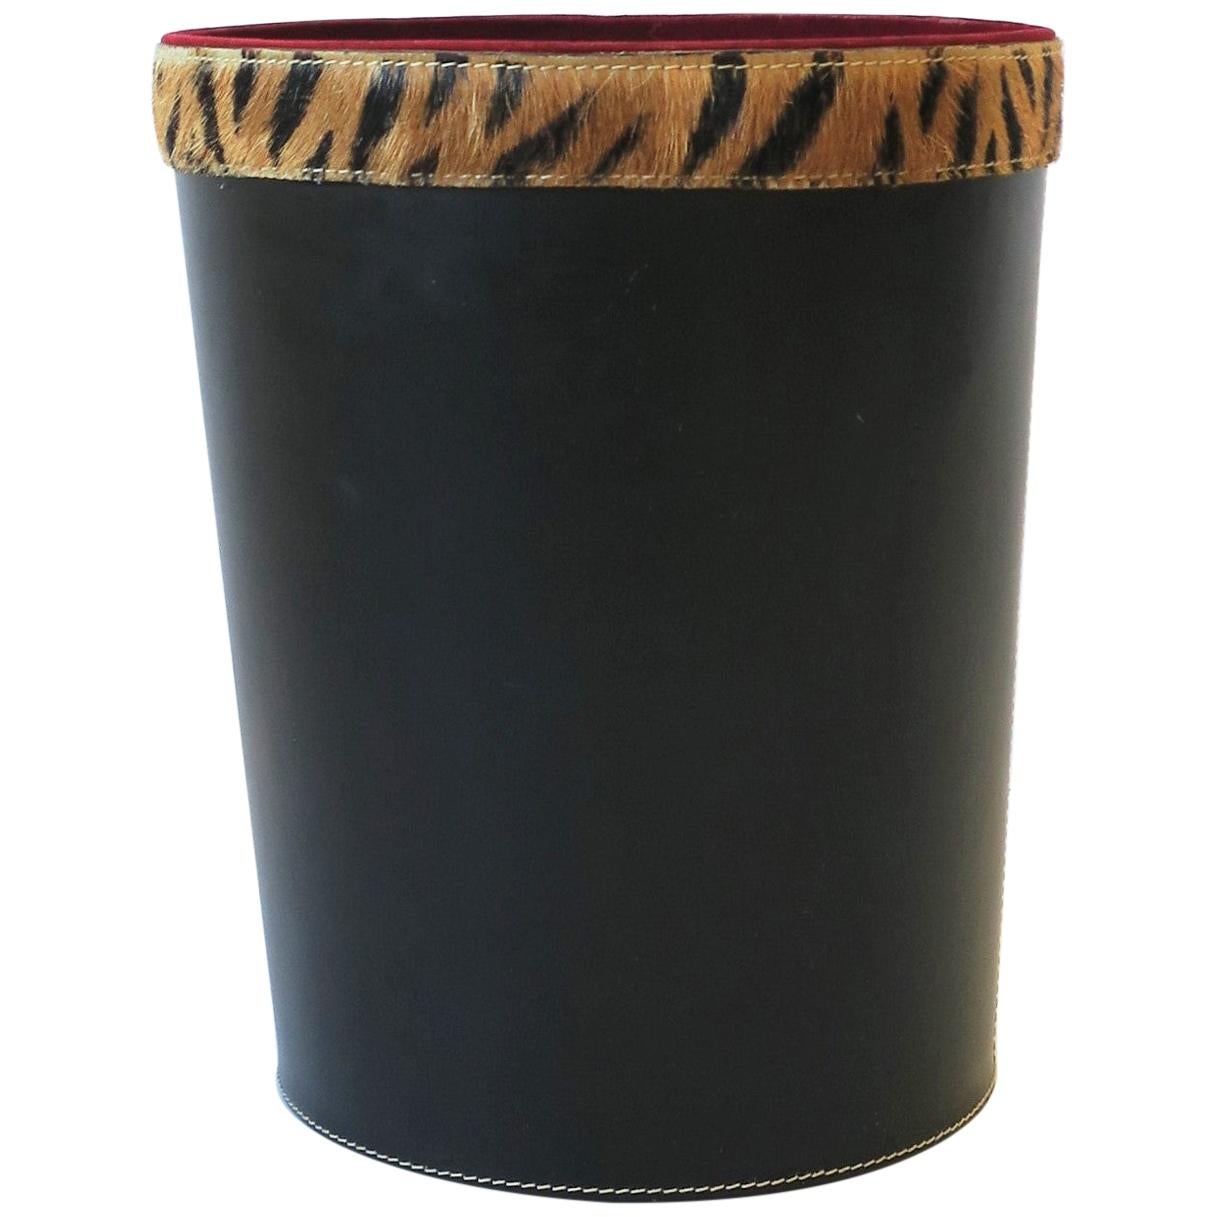 Black Wastebasket or Trash Can with Tiger or Leopard Animal Hide Design